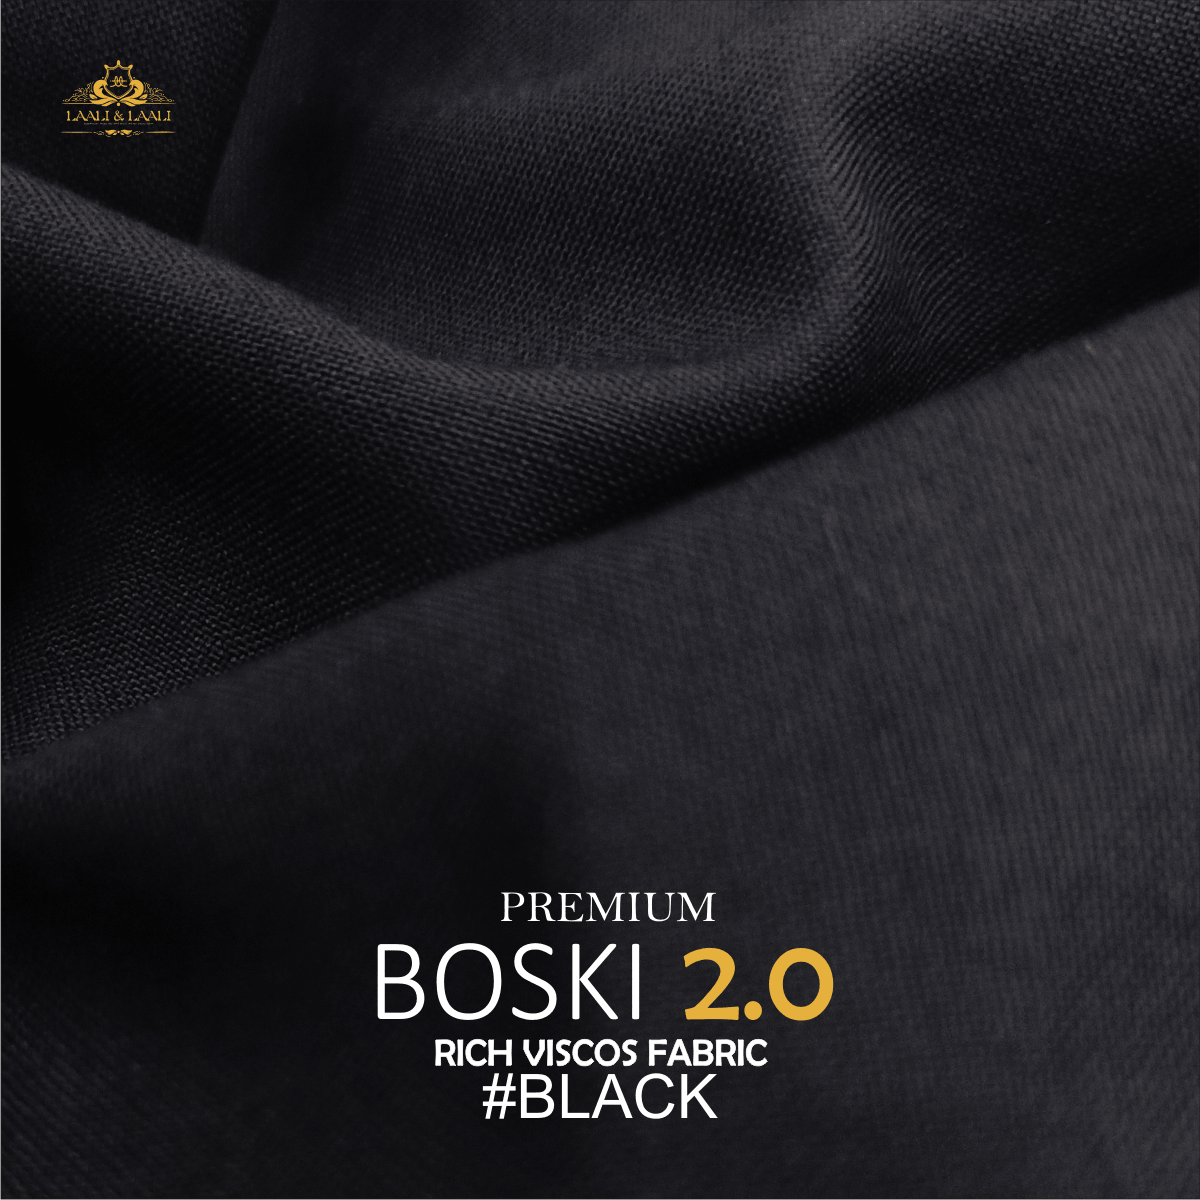 Premium Boski 2.0